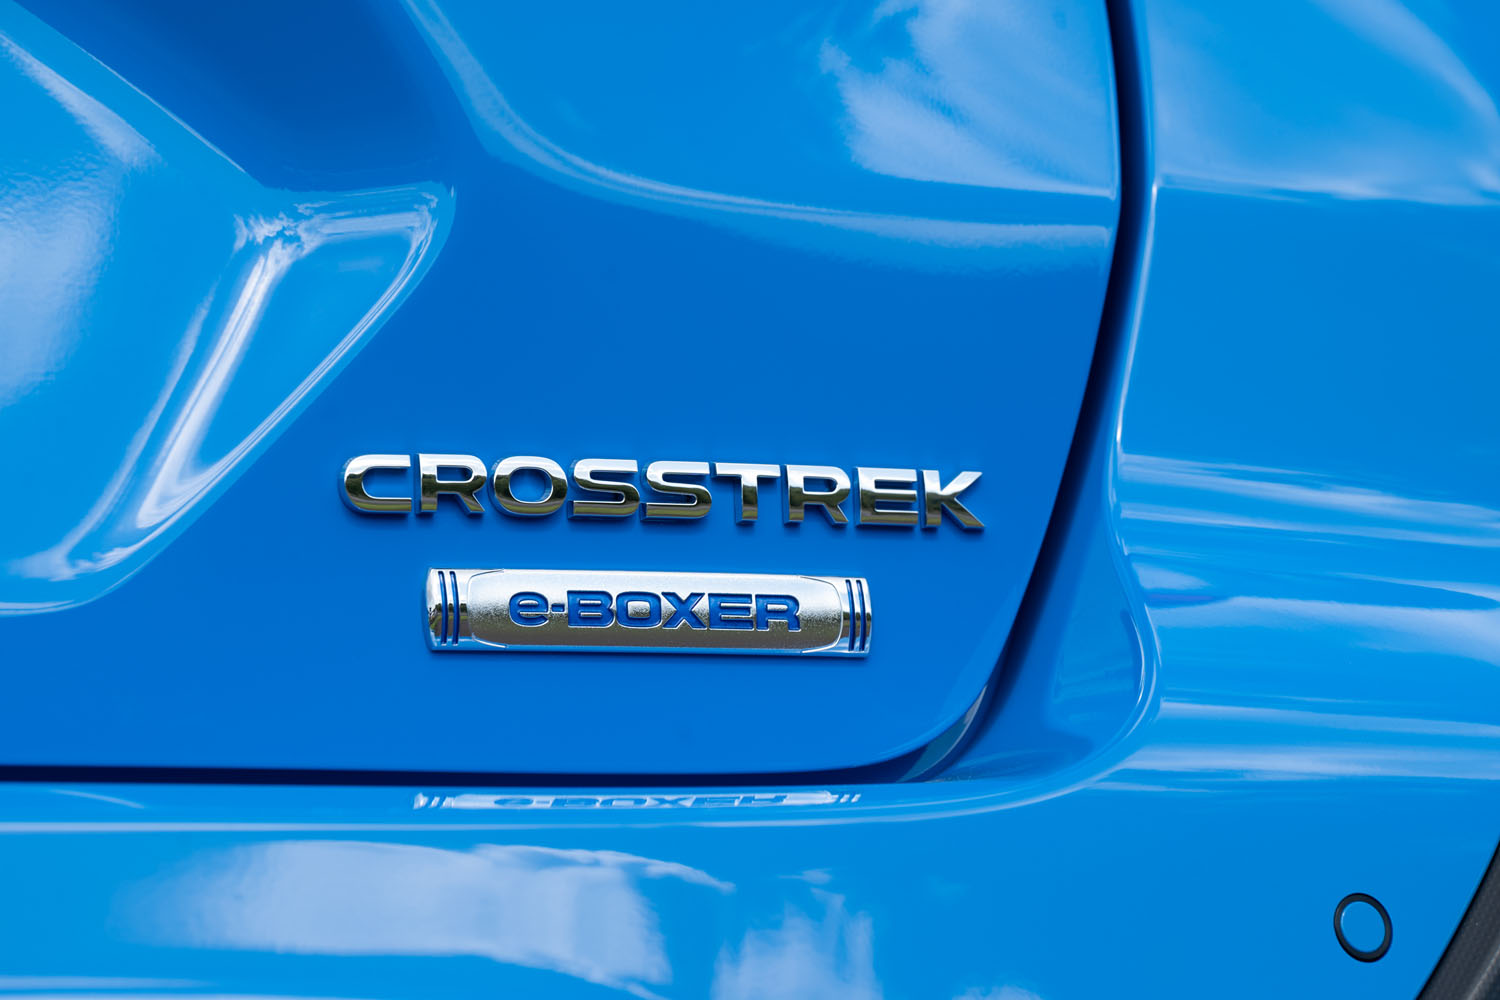 スバルの新しいコンパクトクロスオーバー「クロストレック」。実質的な「XV」の後継車種であり、このモデルから、北米などで用いられているクロストレックに、世界的に車名が統一されることとなった。